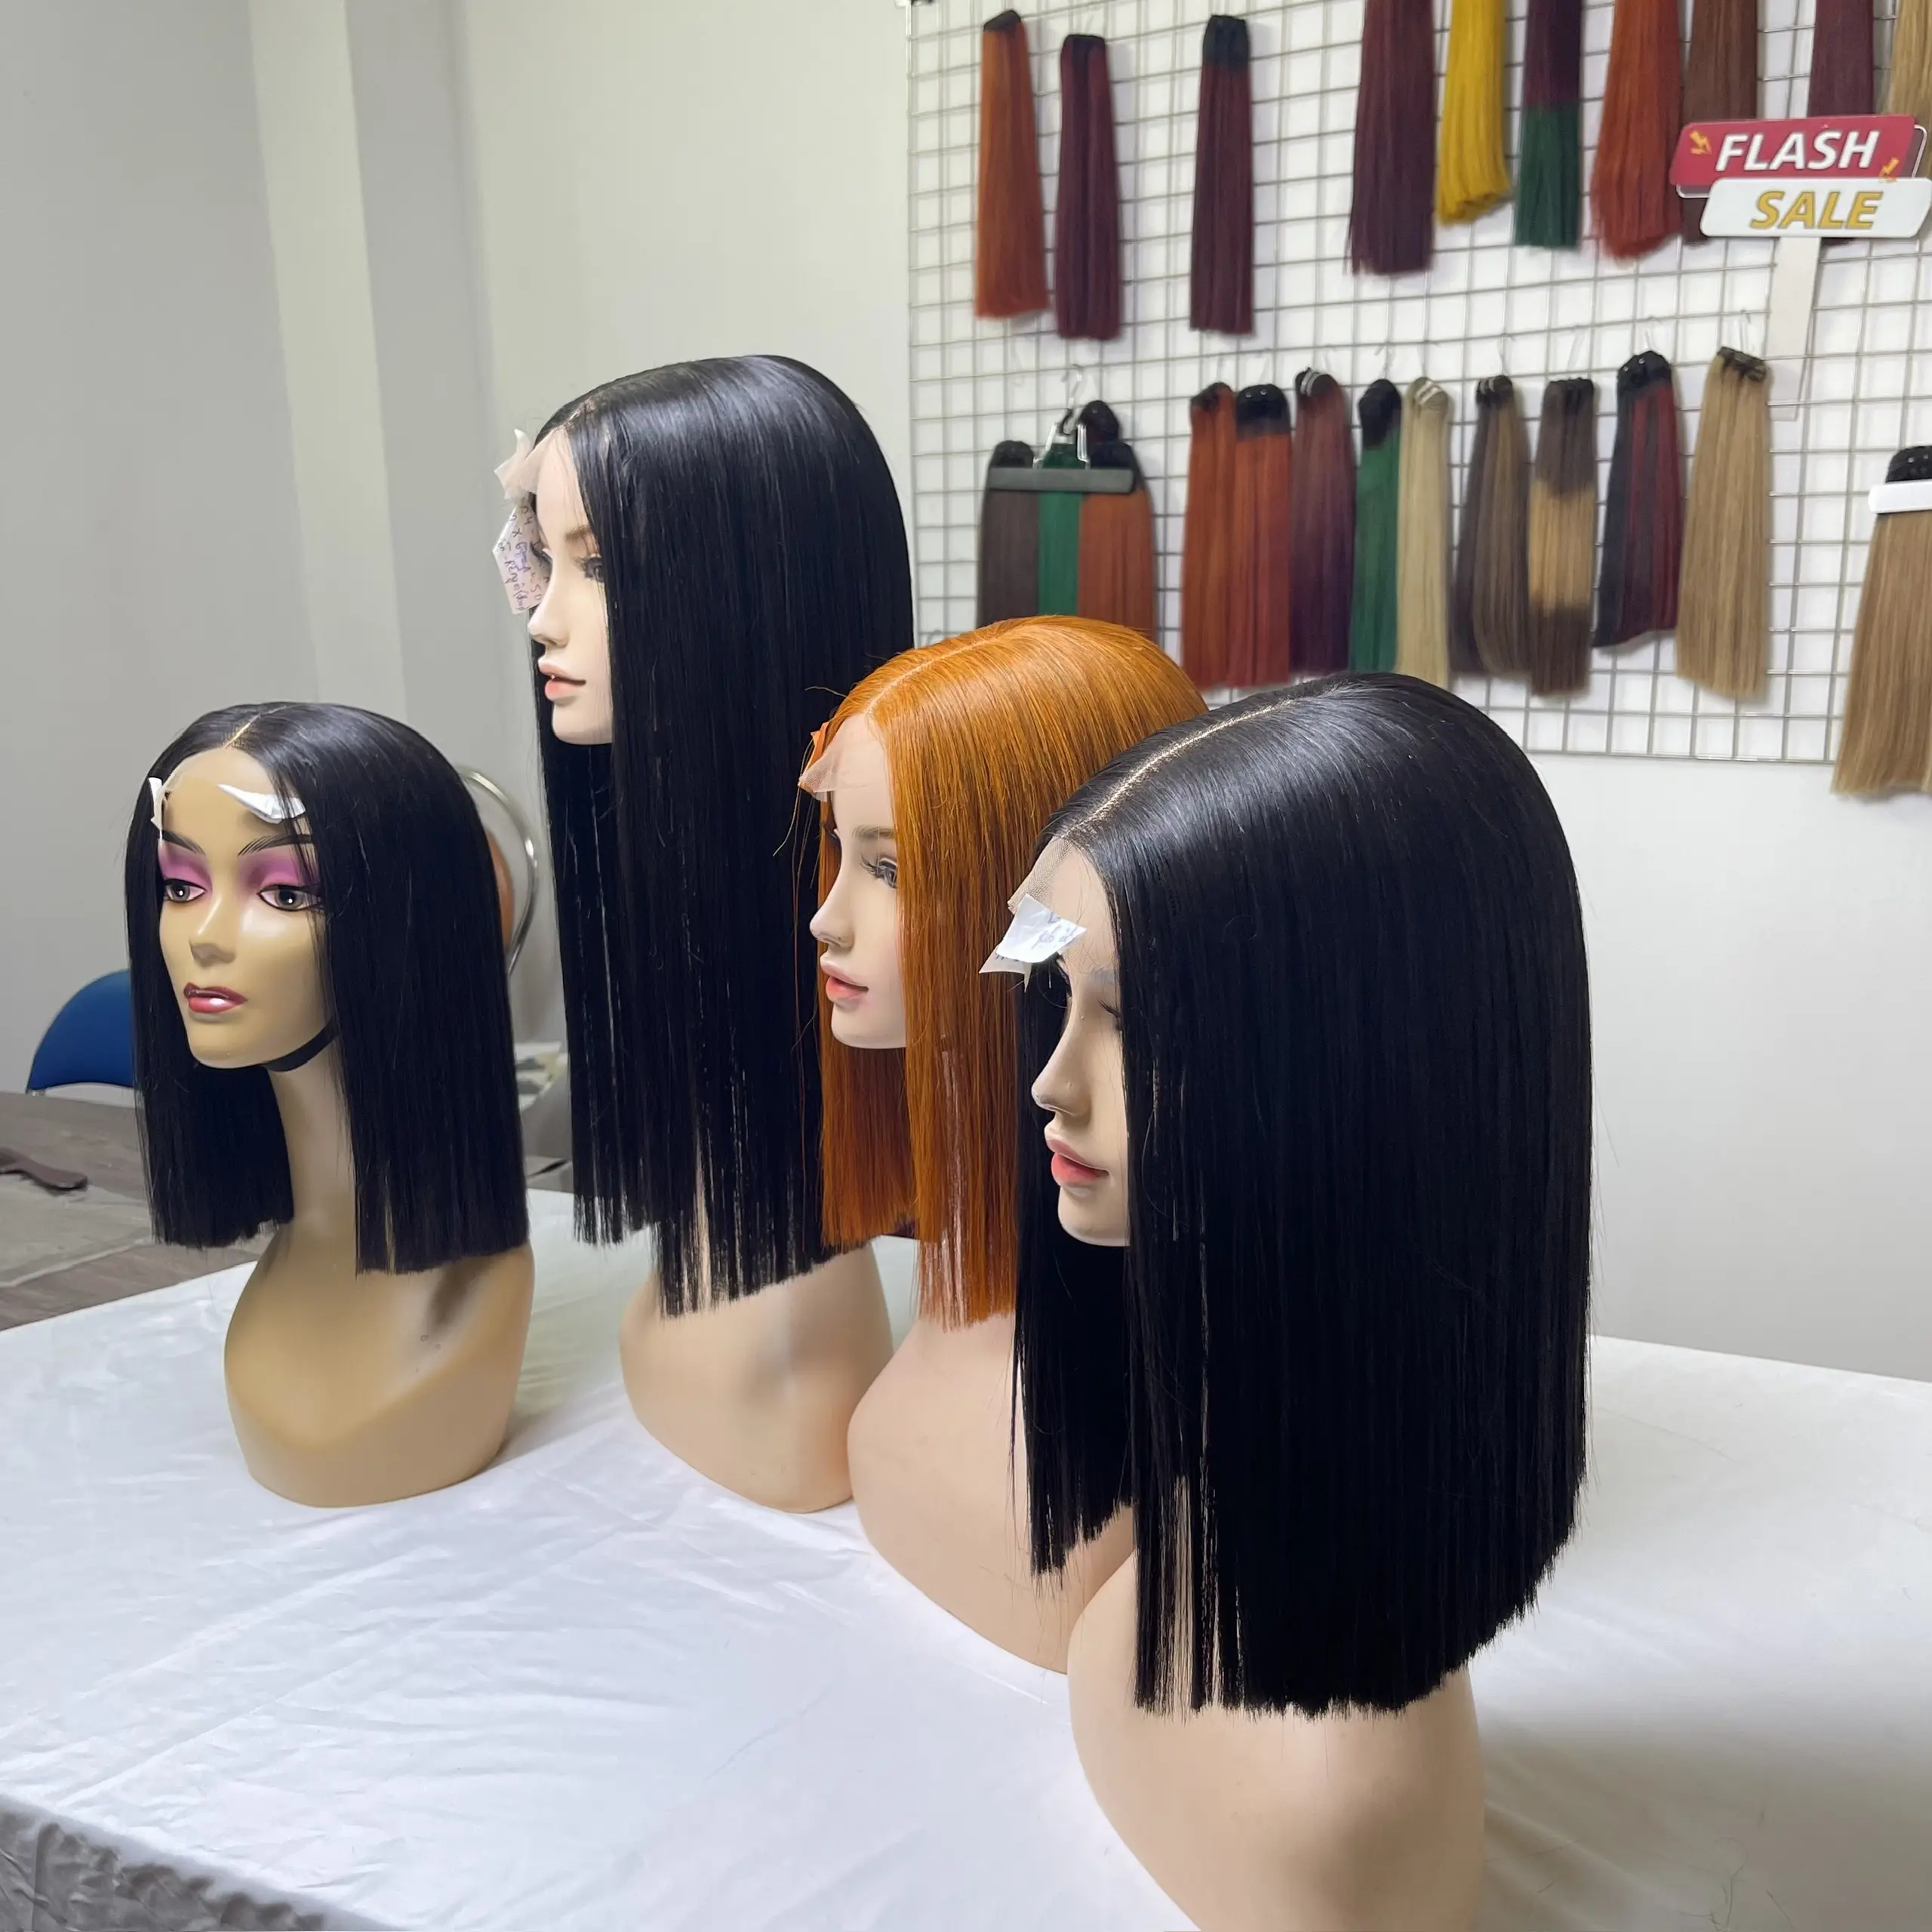 FLASH SALE!! Perücke Anbieter Großhandel Echthaar verlängerung Perücken Alle Farbe Echthaar hochwertige unverarbeitete Haare